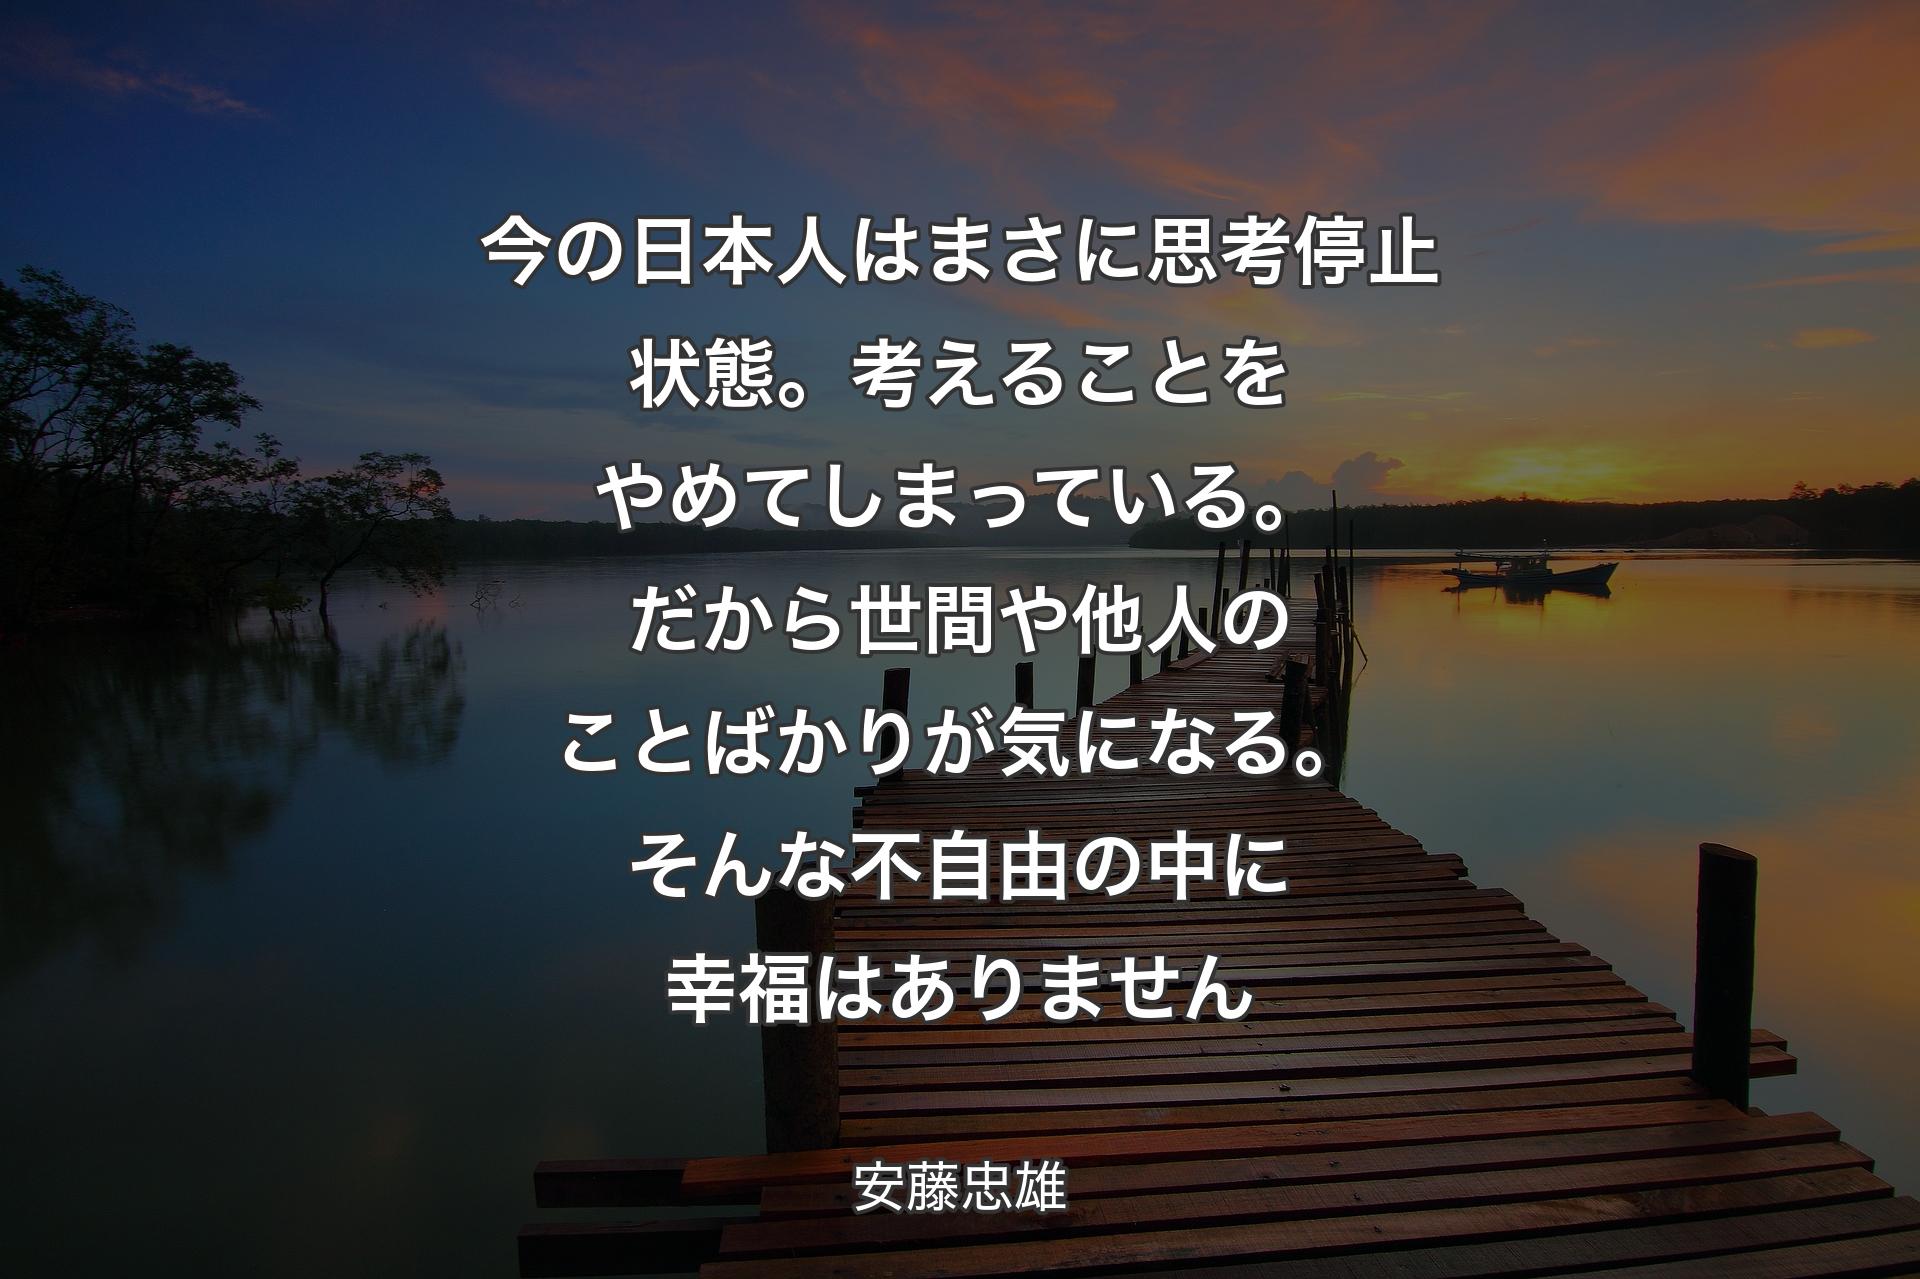 【背景3】今の日本人はまさに思考停止状態。考えることをやめてしまっている。だから世間や他人のことばかりが気になる。そんな不自由の中に幸福はありません - 安藤忠雄